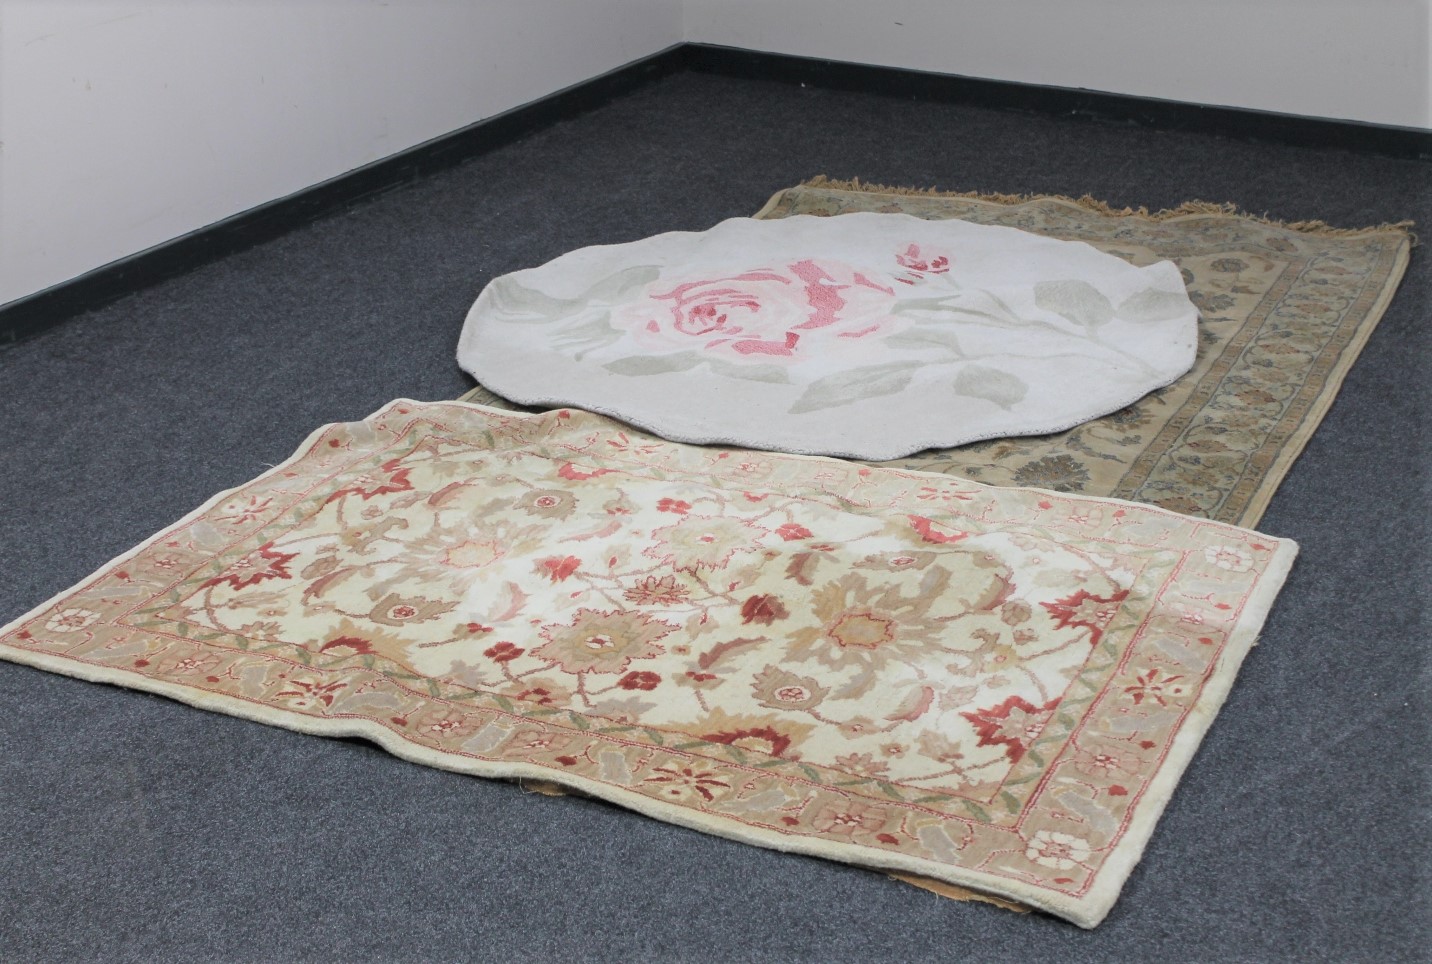 Three floral woollen rugs